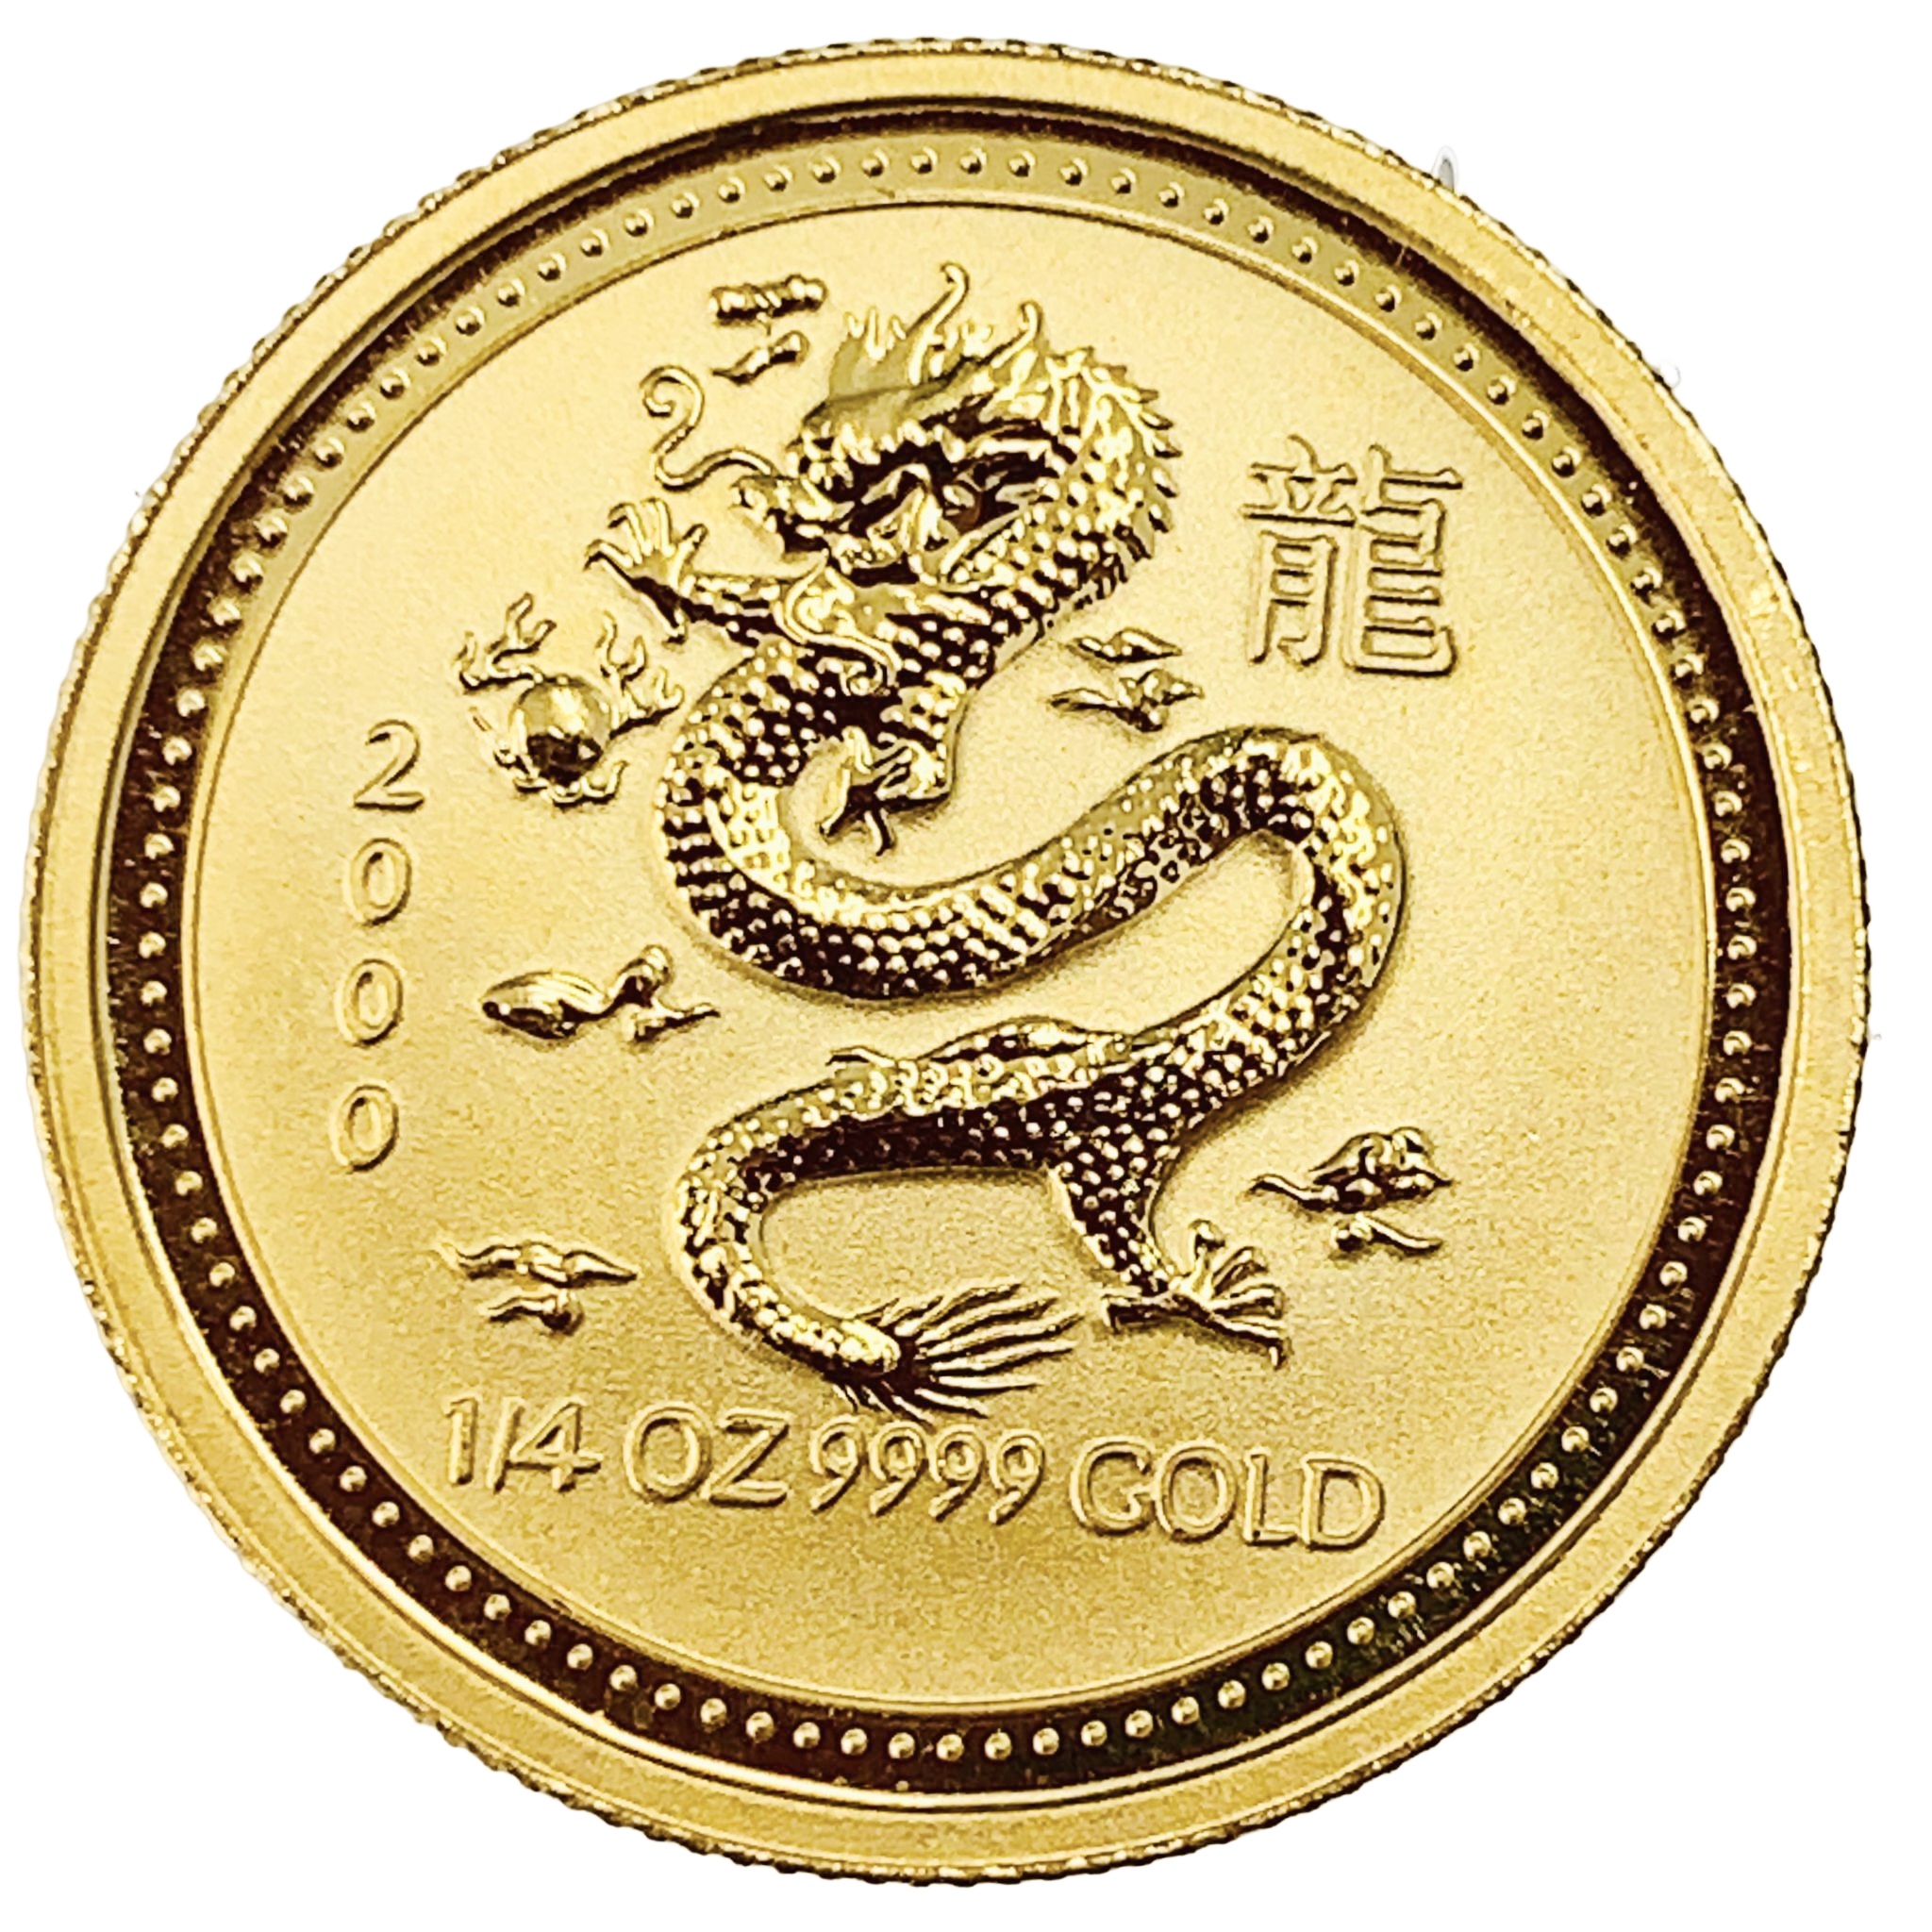 干支辰 金貨 竜 龍 オーストラリア 2000年 K24 純金 7.7g コイン 1/4